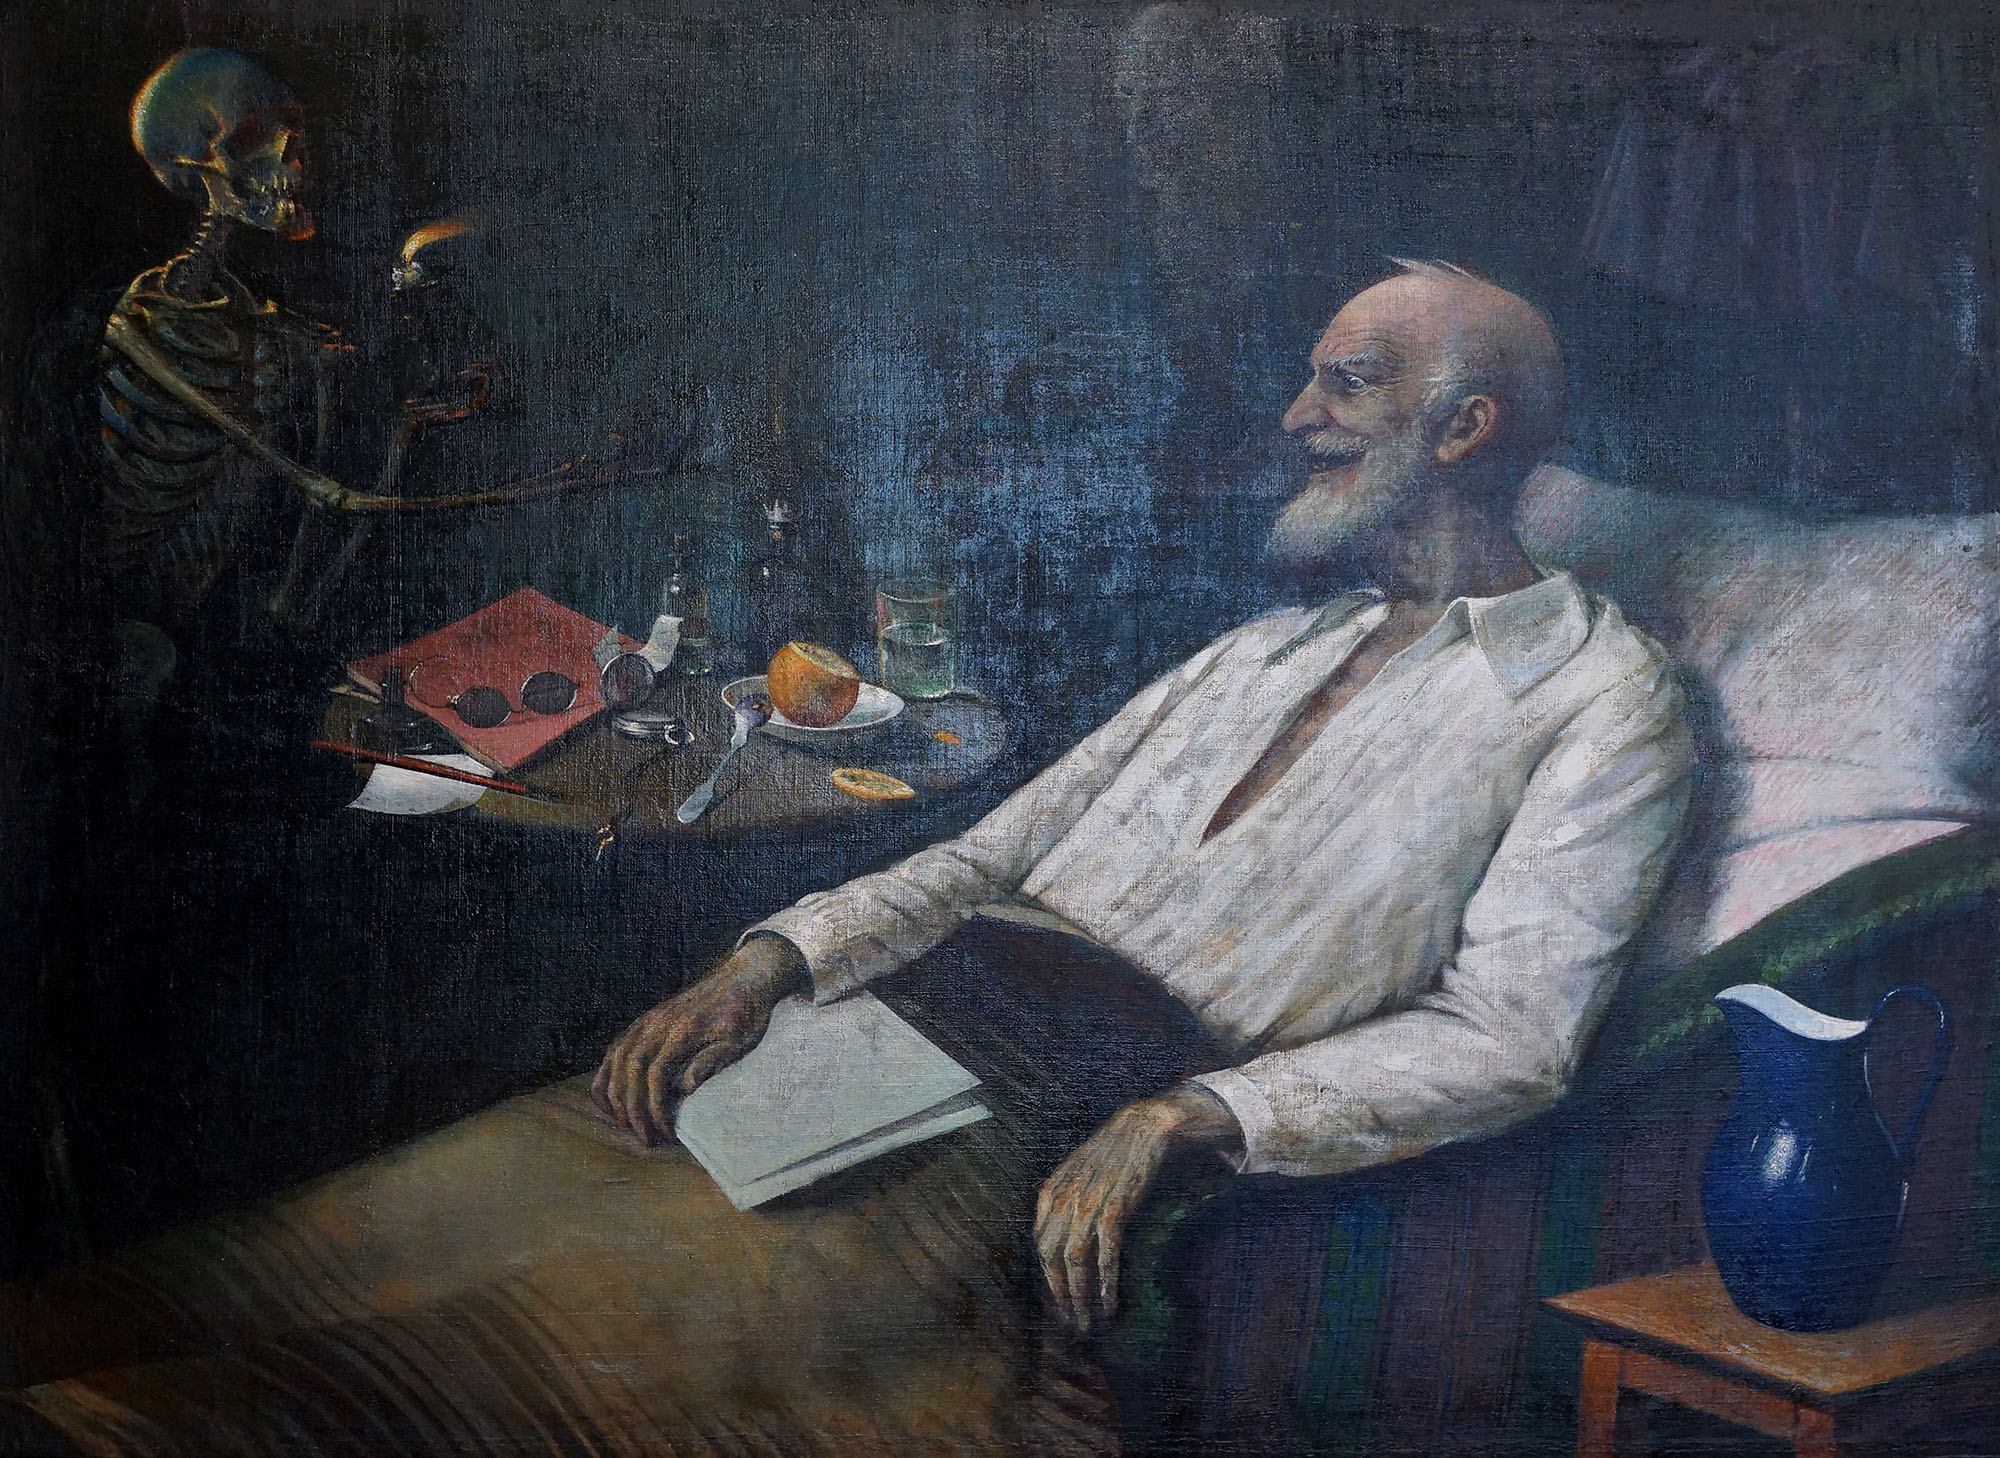 Юдель Моисеевич Пэн. "Старик и смерть (Хохот смерти)". 1925. Художественный музей, Витебск.